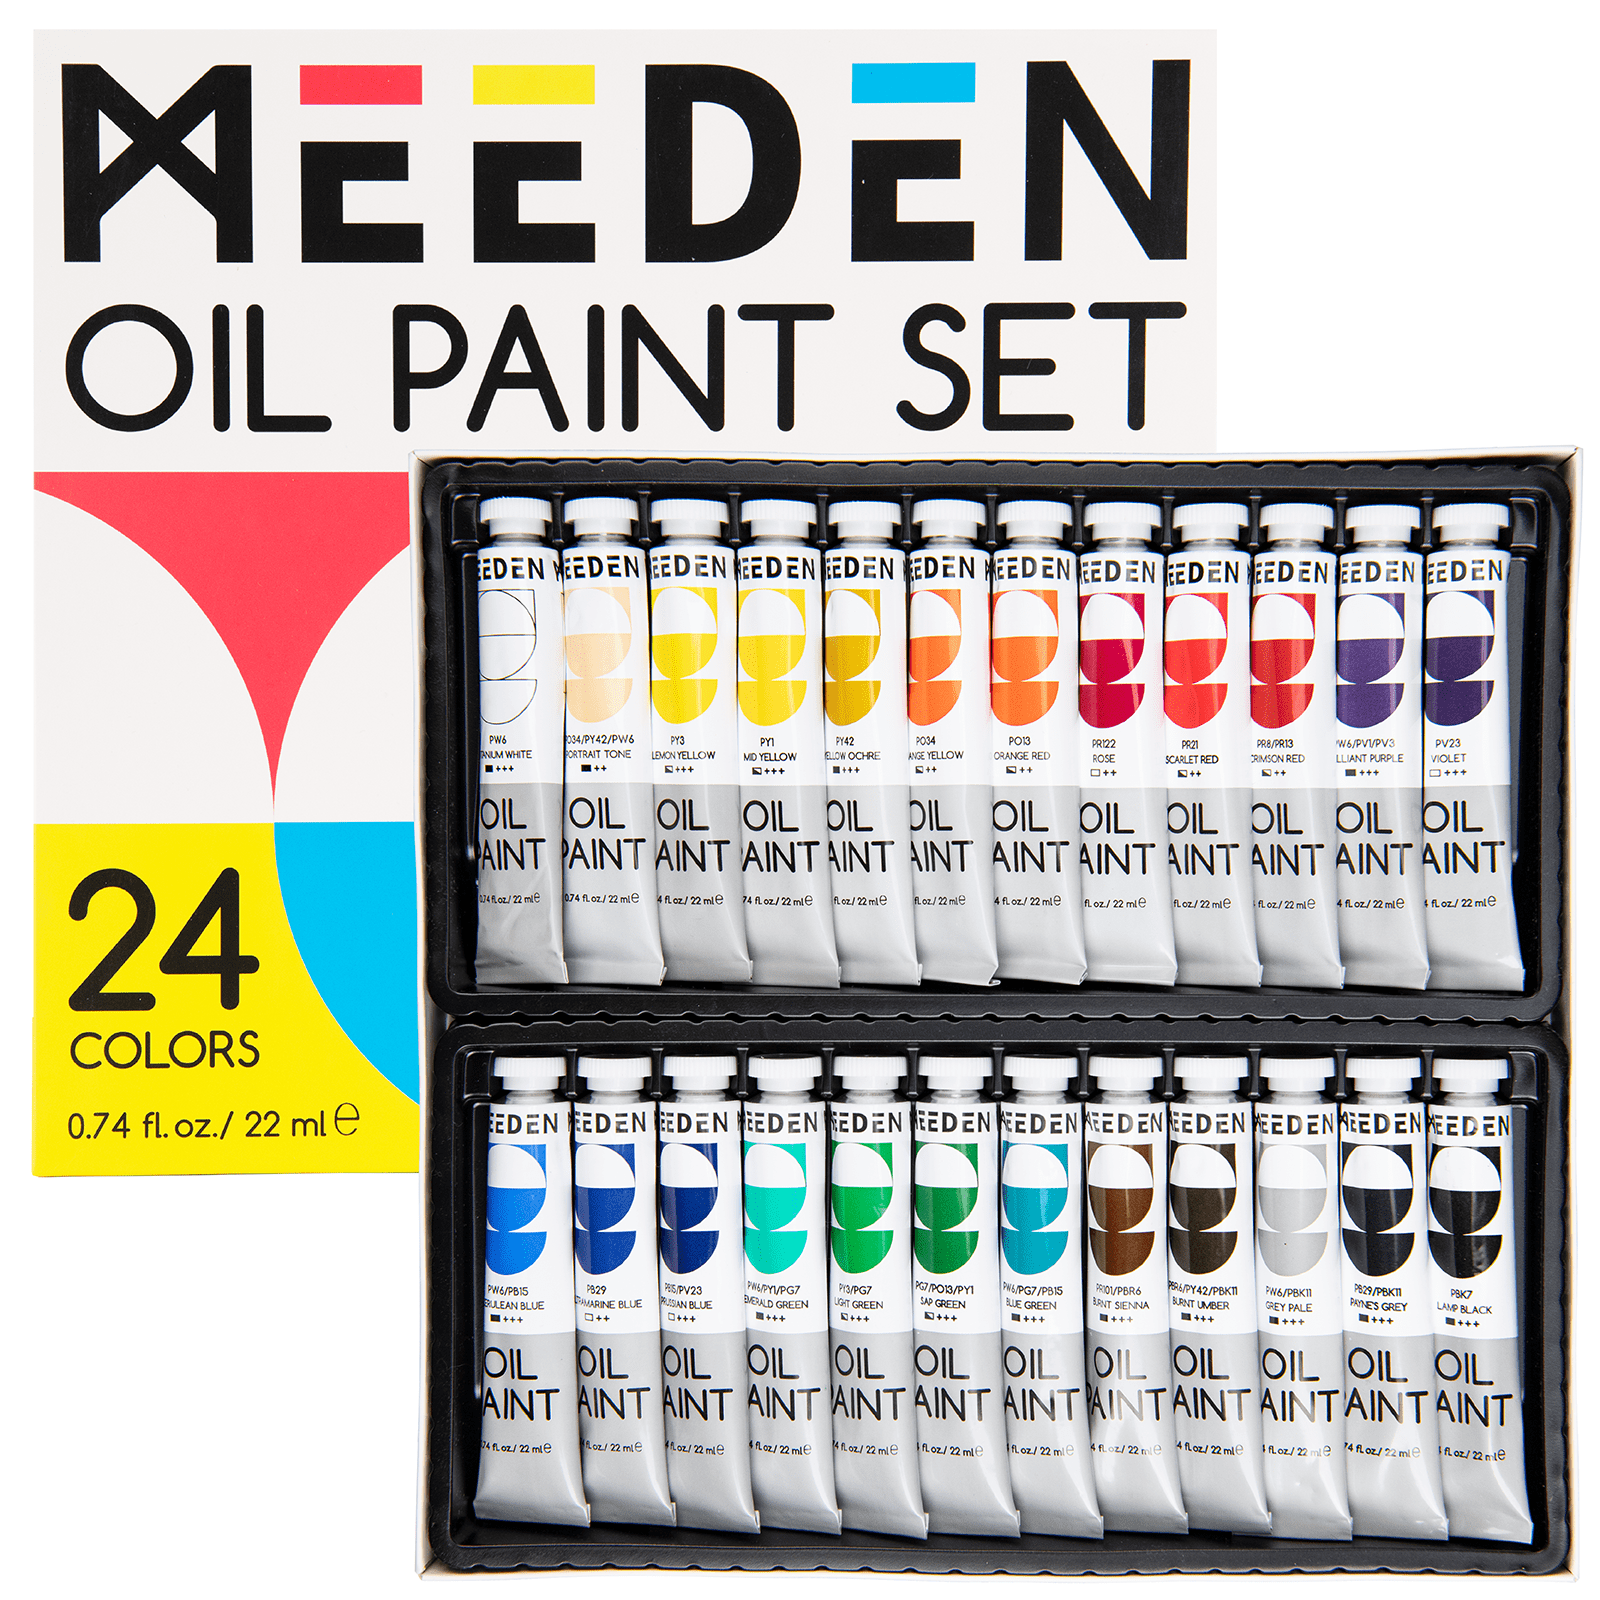 MEEDEN Pastel Fluid Acrylic Paint Set, 6x2 oz/60 ml - MEEDEN Art